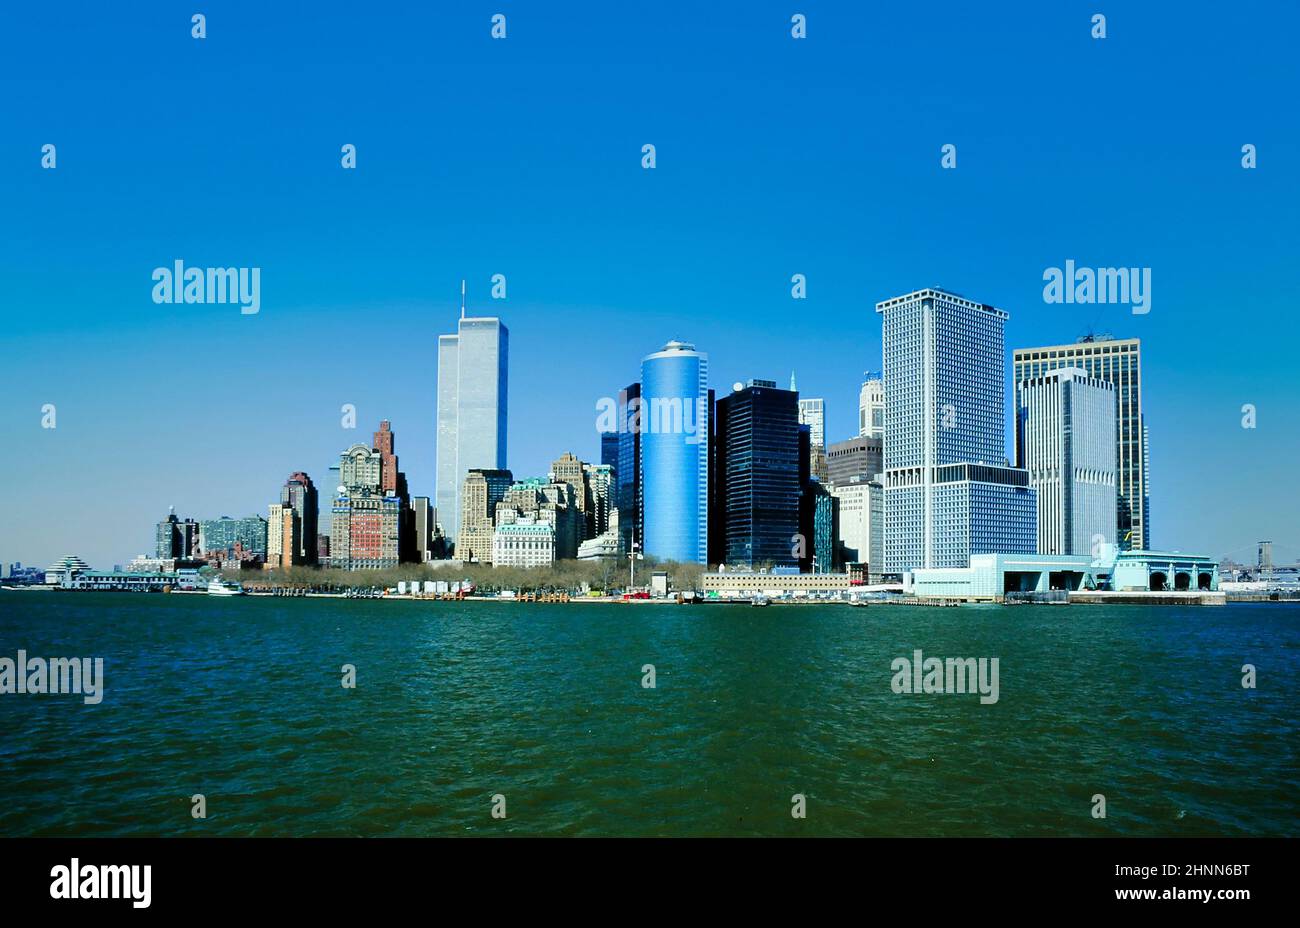 Vista al centro de Manhattan con el horizonte y el World Trade Center bajo el cielo azul claro Foto de stock